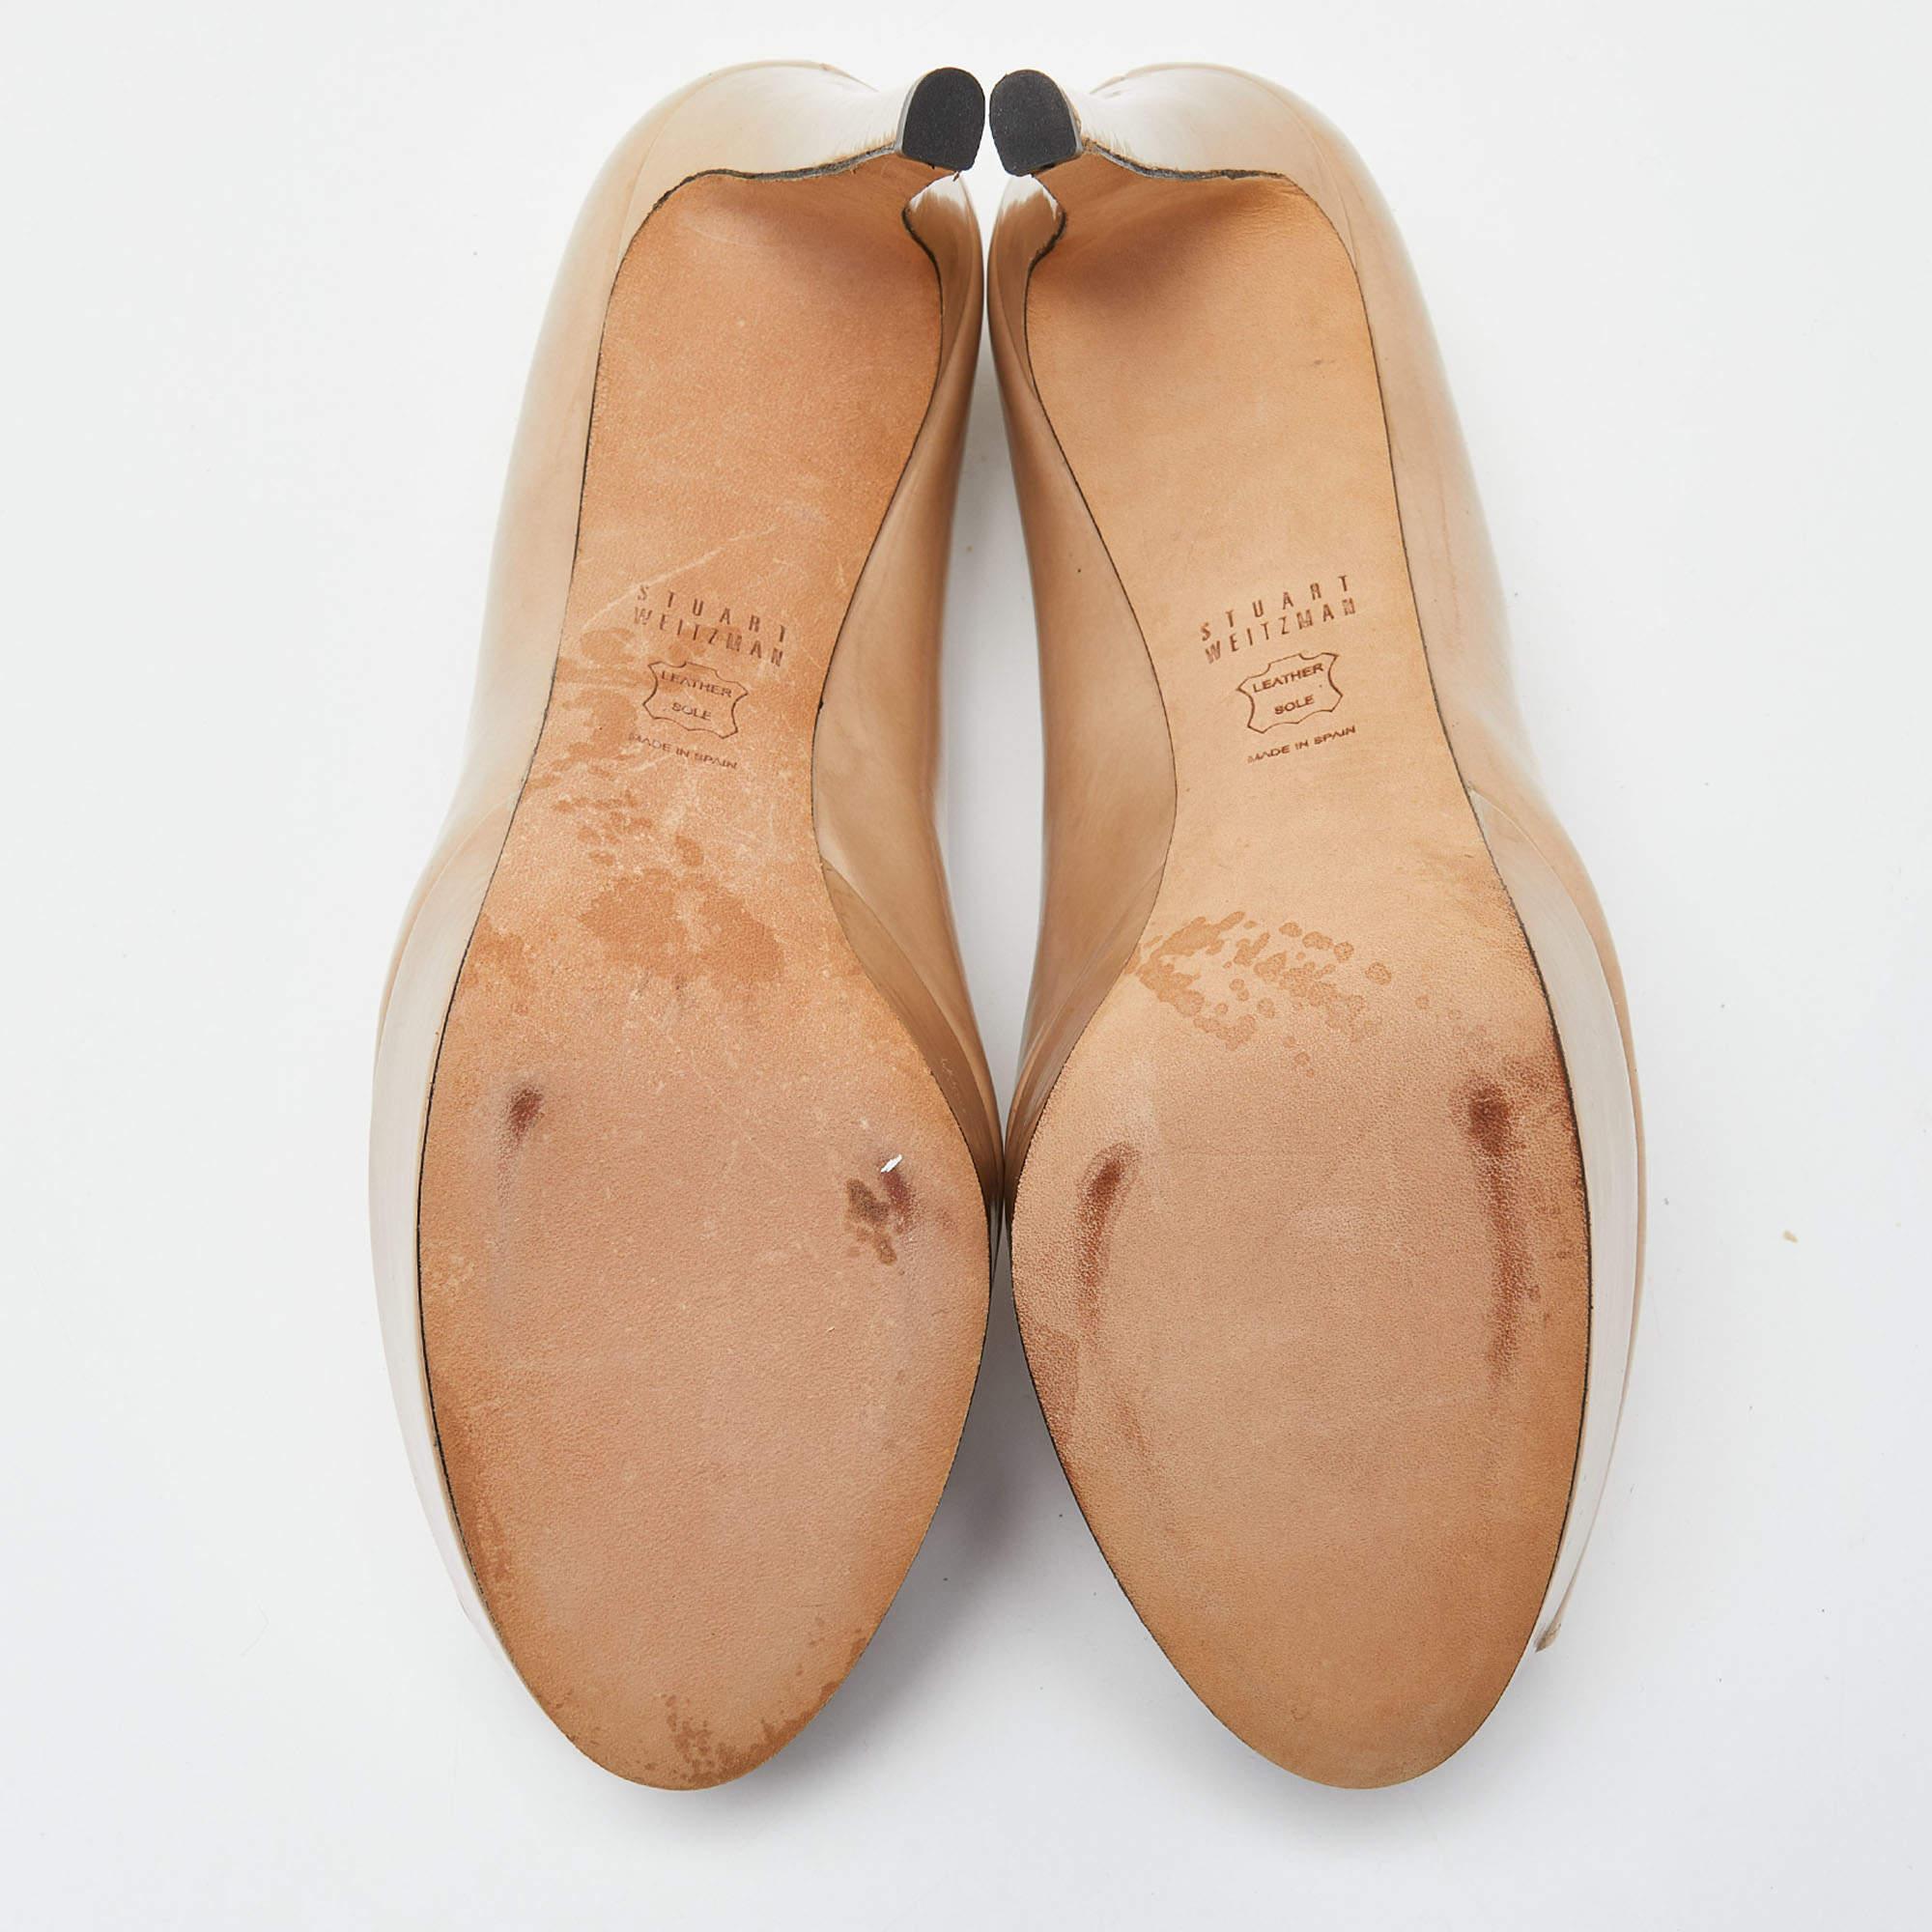 Stuart Weitzman Beige Patent Leather Peep Toe Platform Pumps Size 39.5 For Sale 3